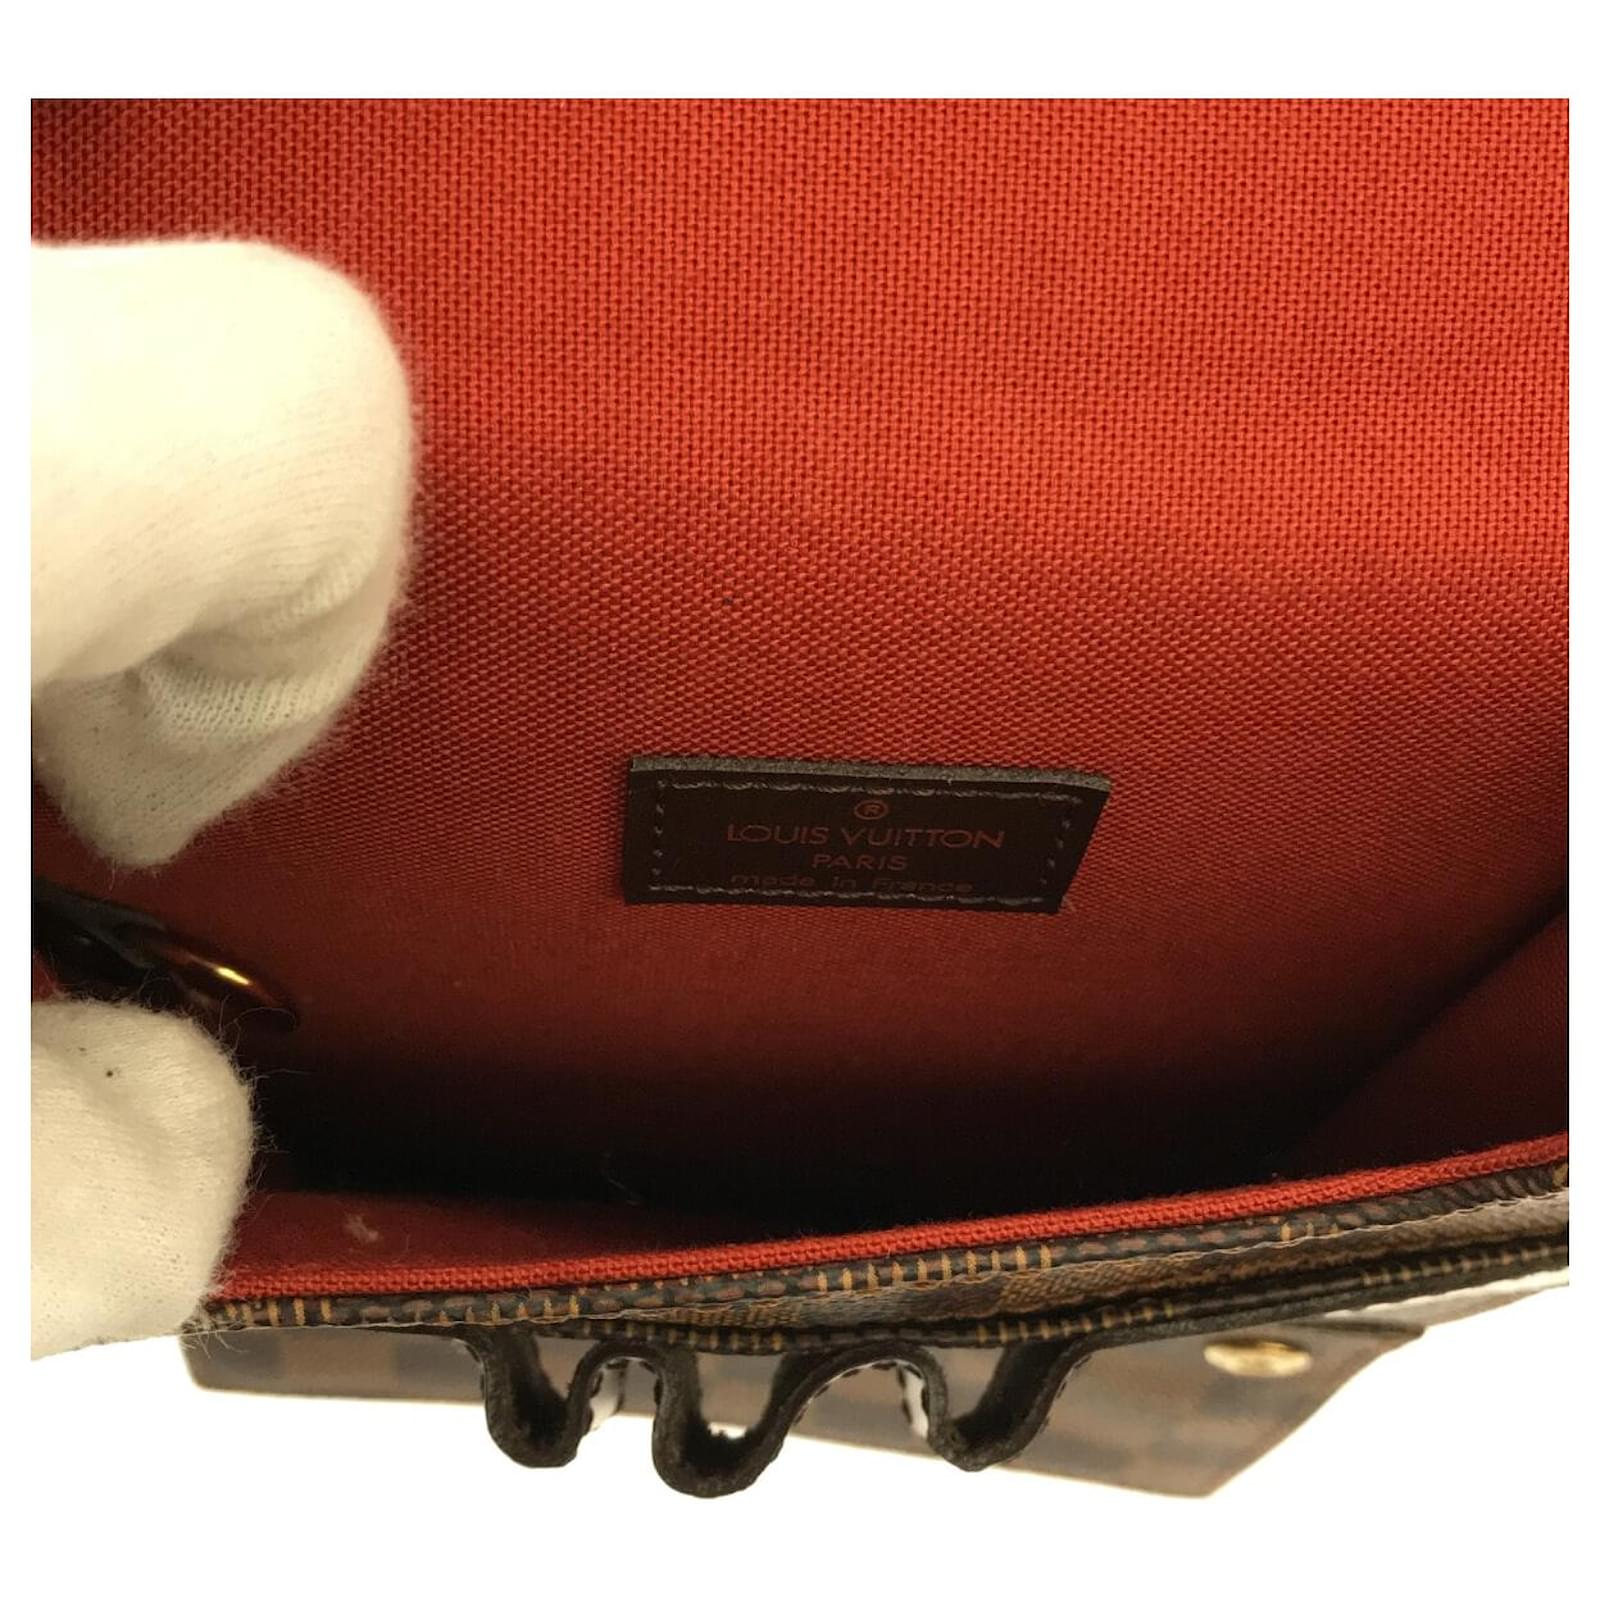 Portobello cloth crossbody bag Louis Vuitton Brown in Cloth - 16107776